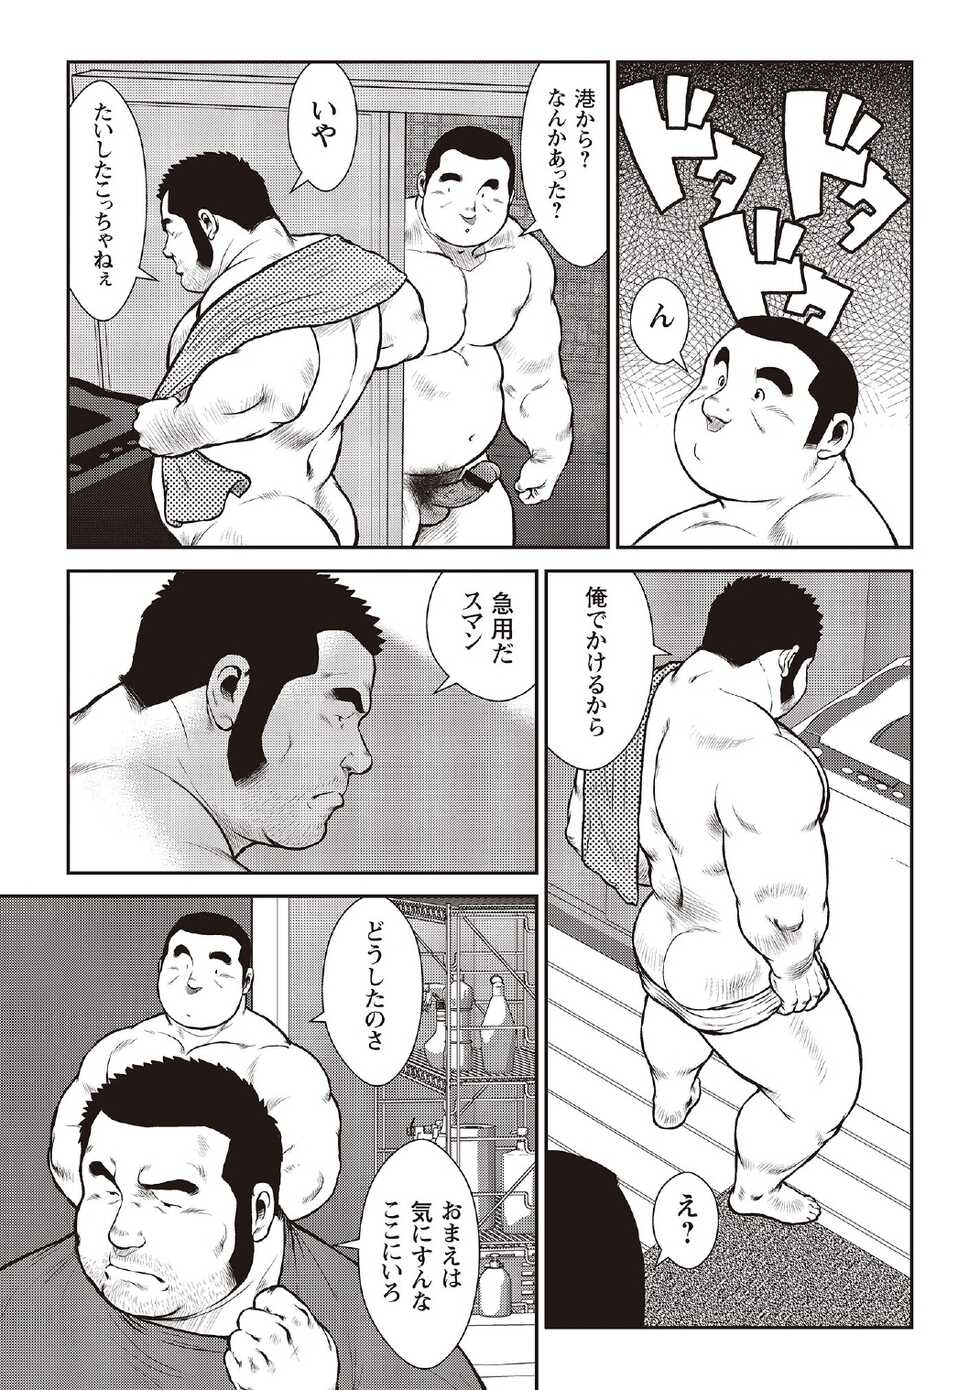 [Ebisubashi Seizou] Ebisubashi Seizou Tanpen Manga Shuu 2 Fuuun! Danshi Ryou [Bunsatsuban] PART 3 Bousou Hantou Taifuu Zensen Ch. 3 ~ Ch. 5 [Digital] - Page 37